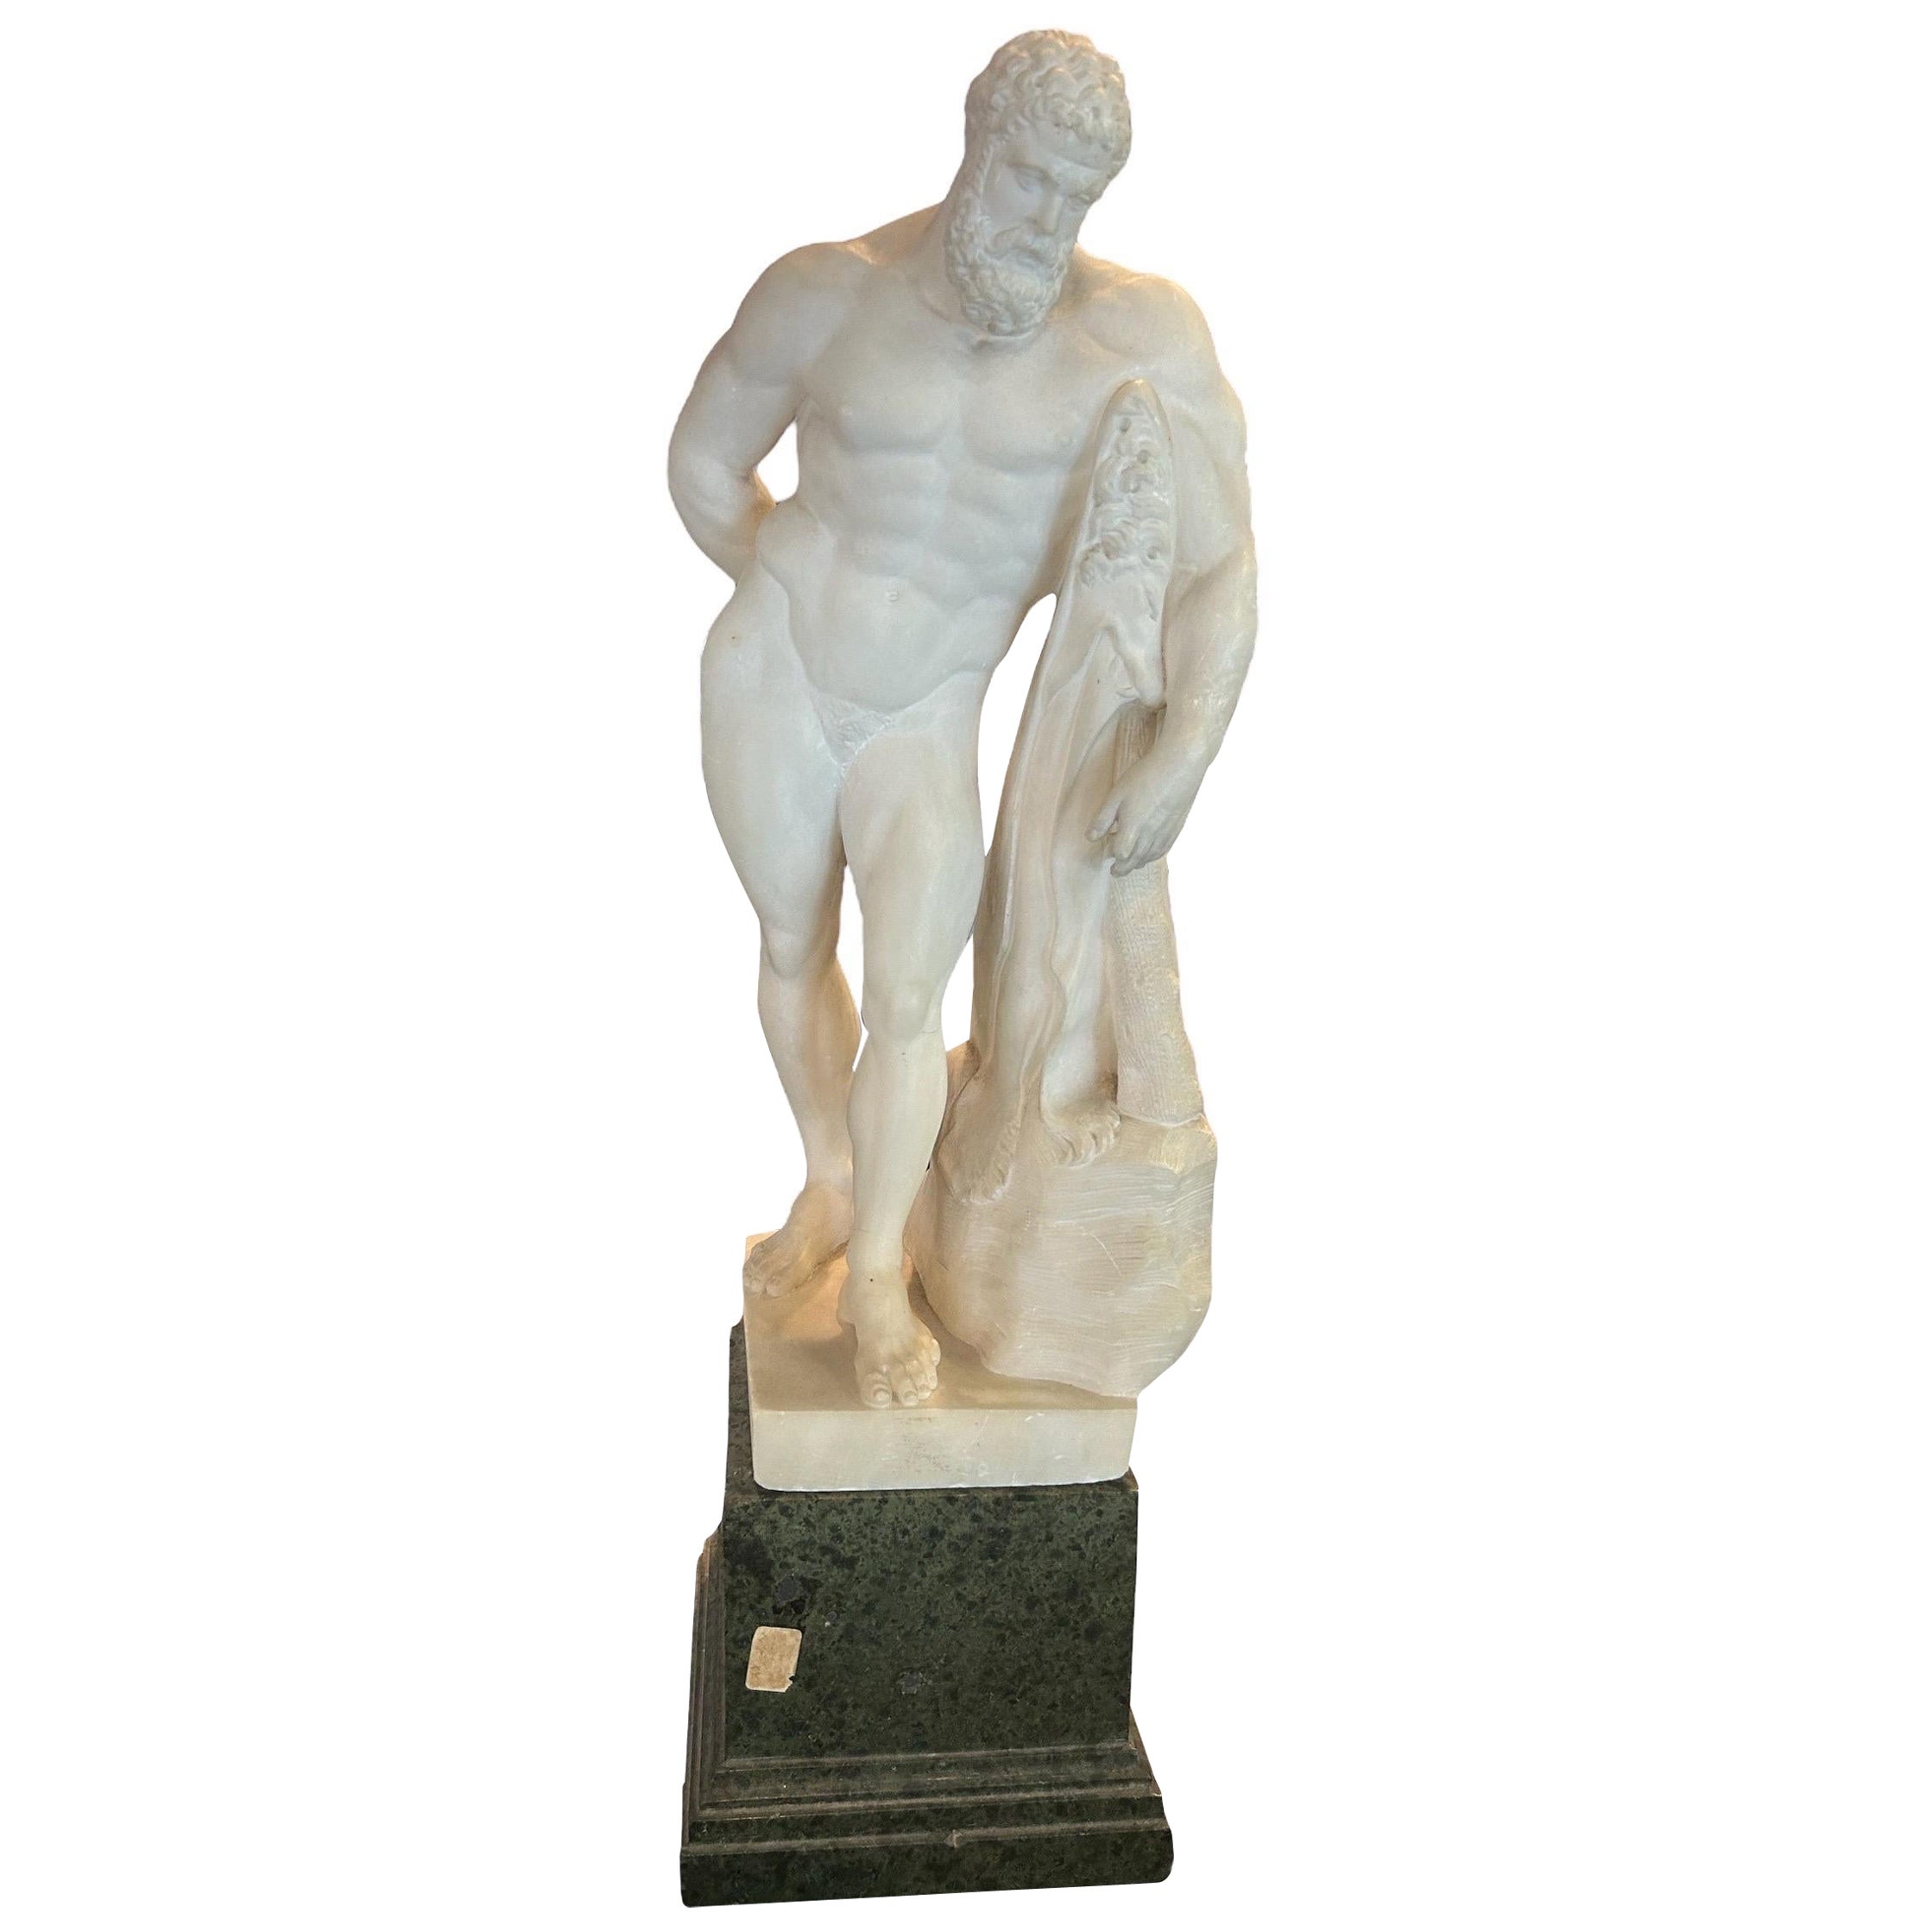 Alabasterskulptur aus dem frühen 19. Jahrhundert, die den Herkules von Farnese darstellt